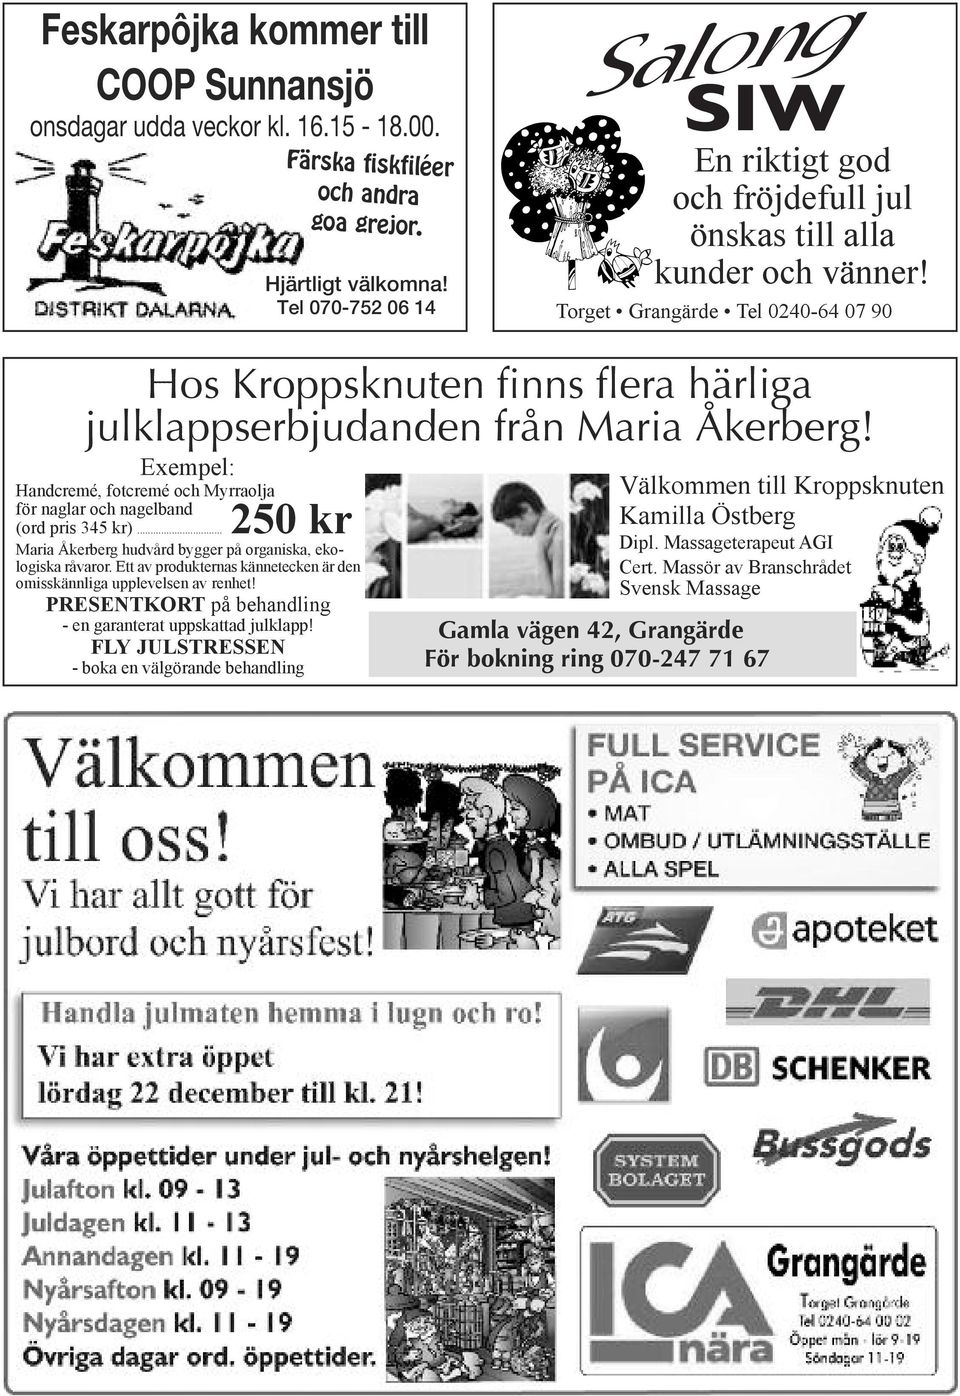 Torget Grangärde Tel 0240-64 07 90 Hos Kroppsknuten finns flera härliga julklappserbjudanden från Maria Åkerberg!